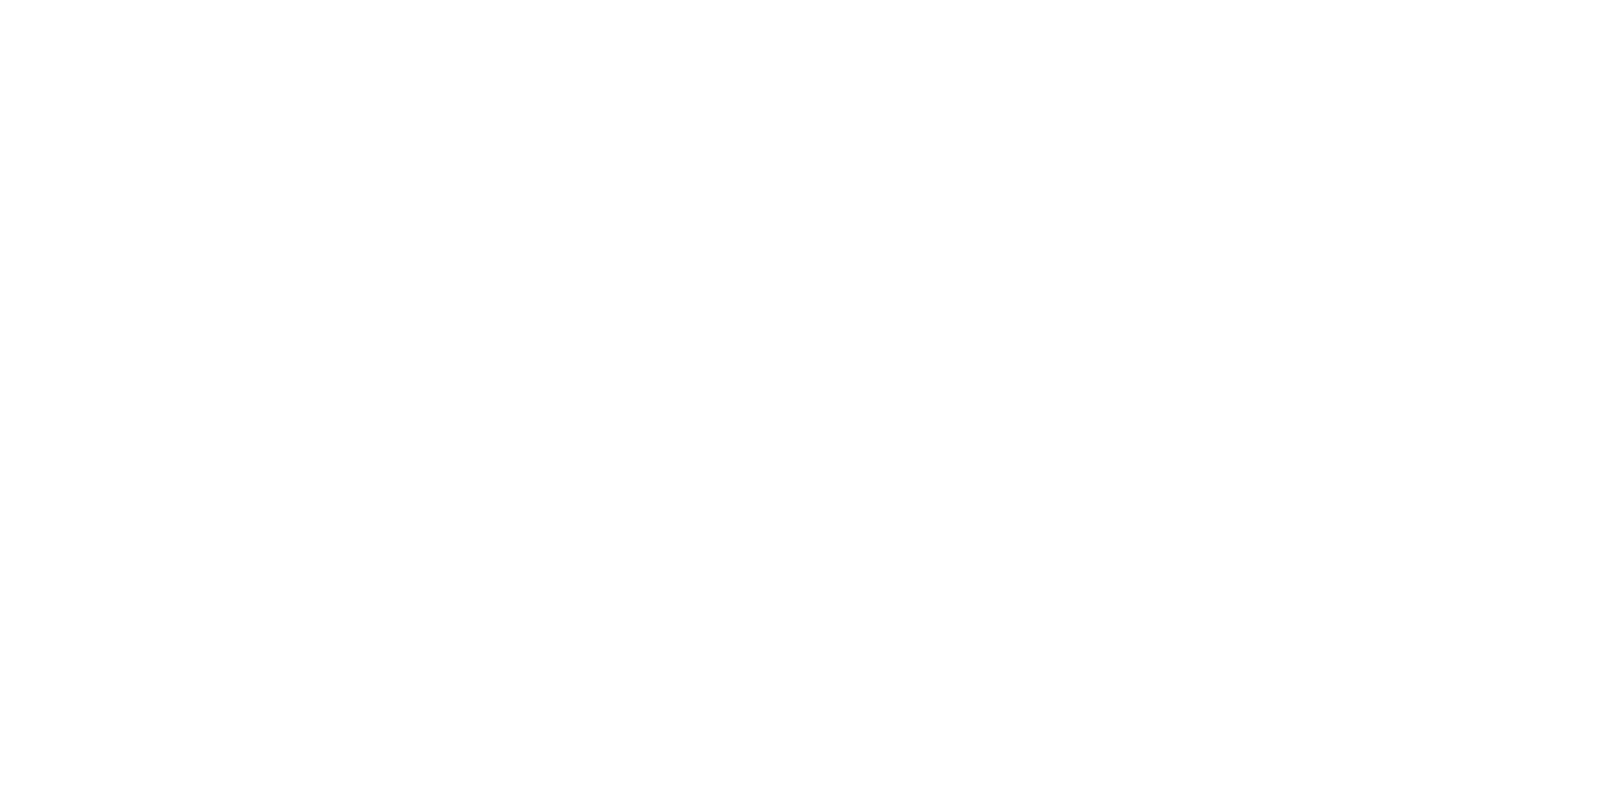 Teledyne logo for dark backgrounds (transparent PNG)